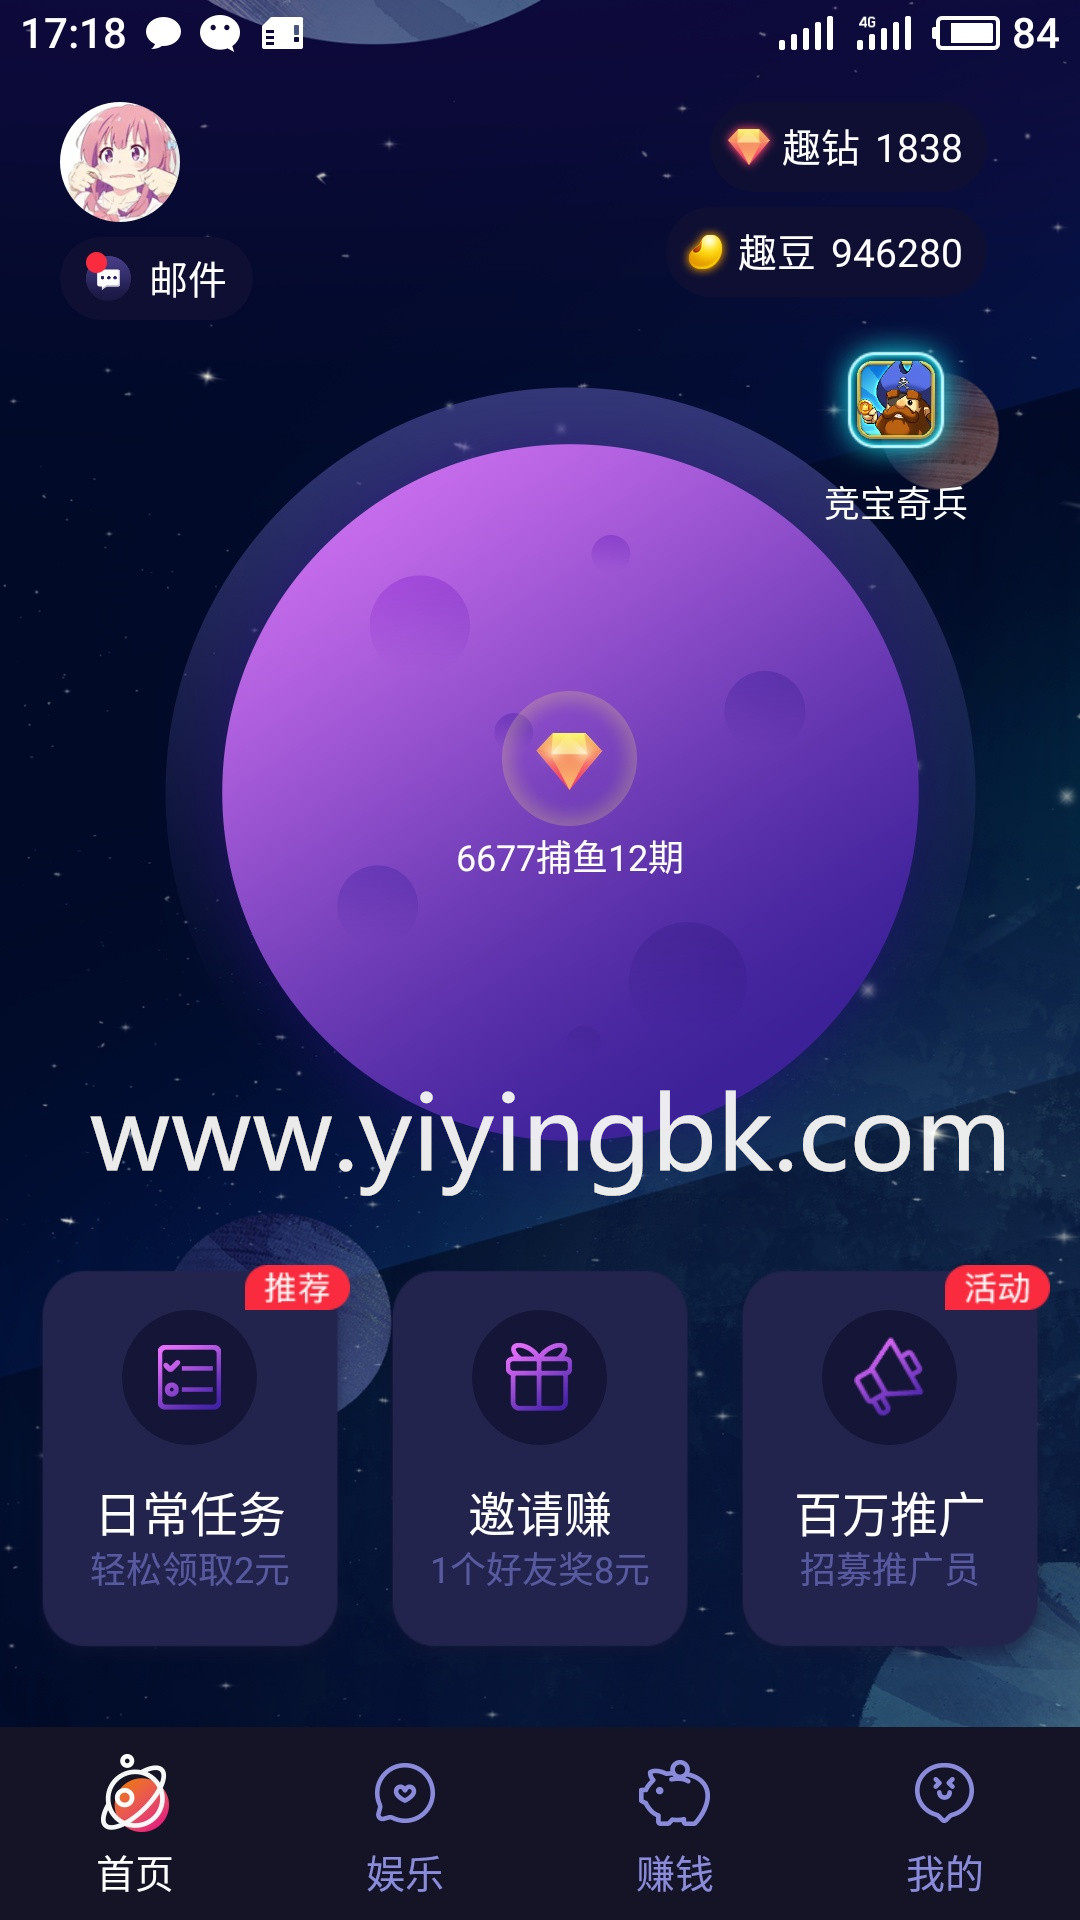 免费玩手游+代理手游赚钱，微信和支付宝1元就能提现，支付秒到账。www.yiyingbk.com